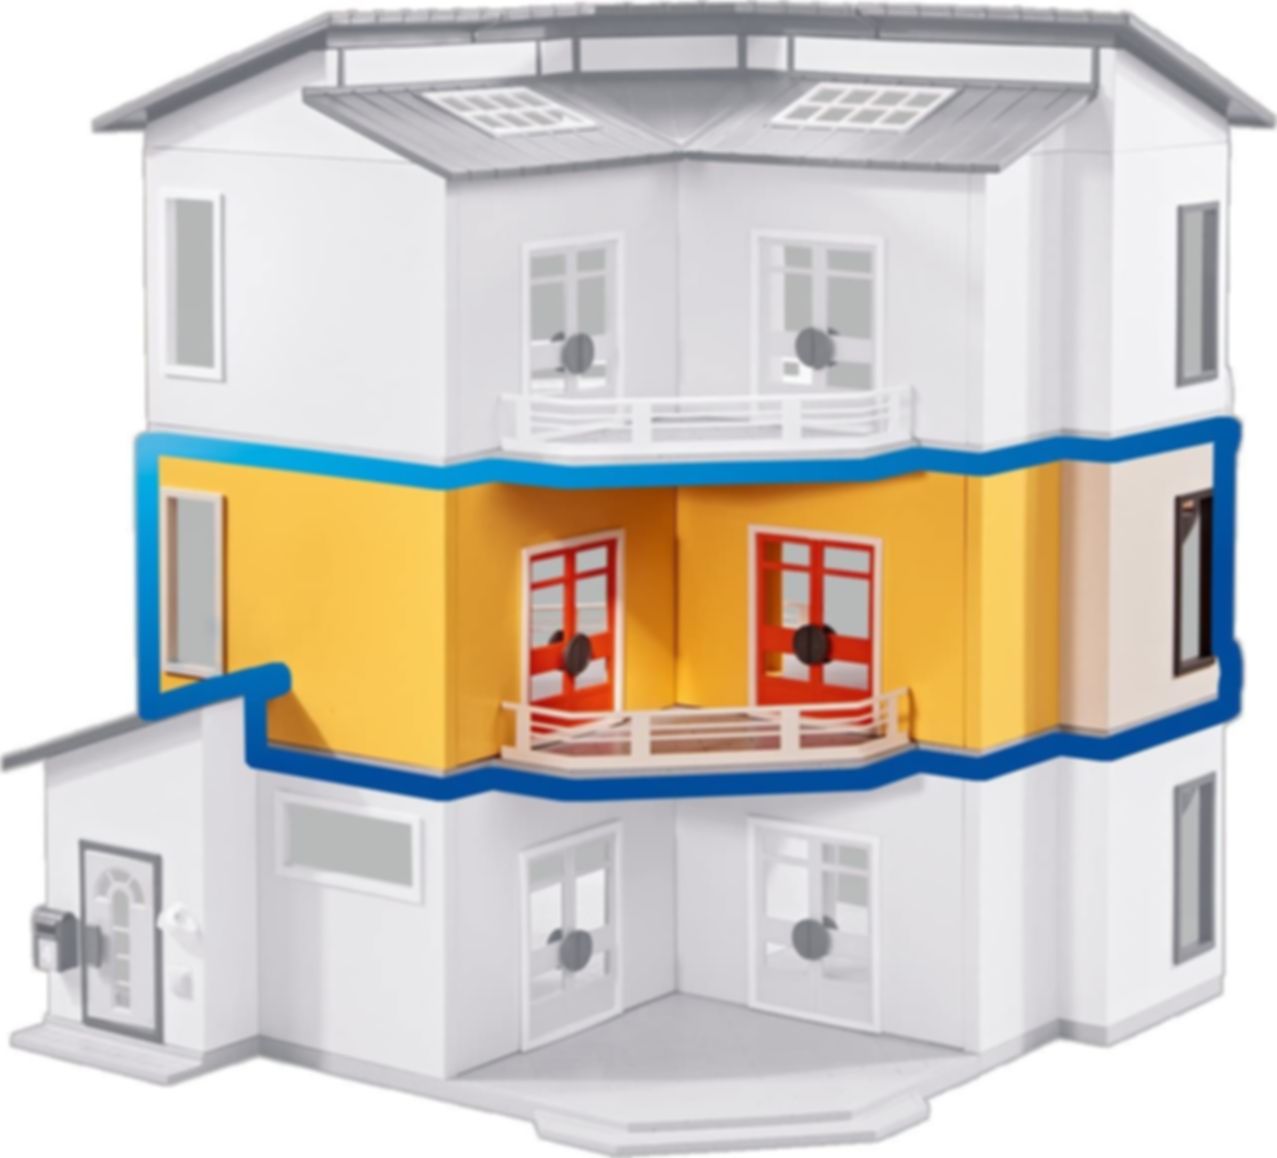 Les meilleurs prix aujourd'hui pour Playmobil® City Life Maison